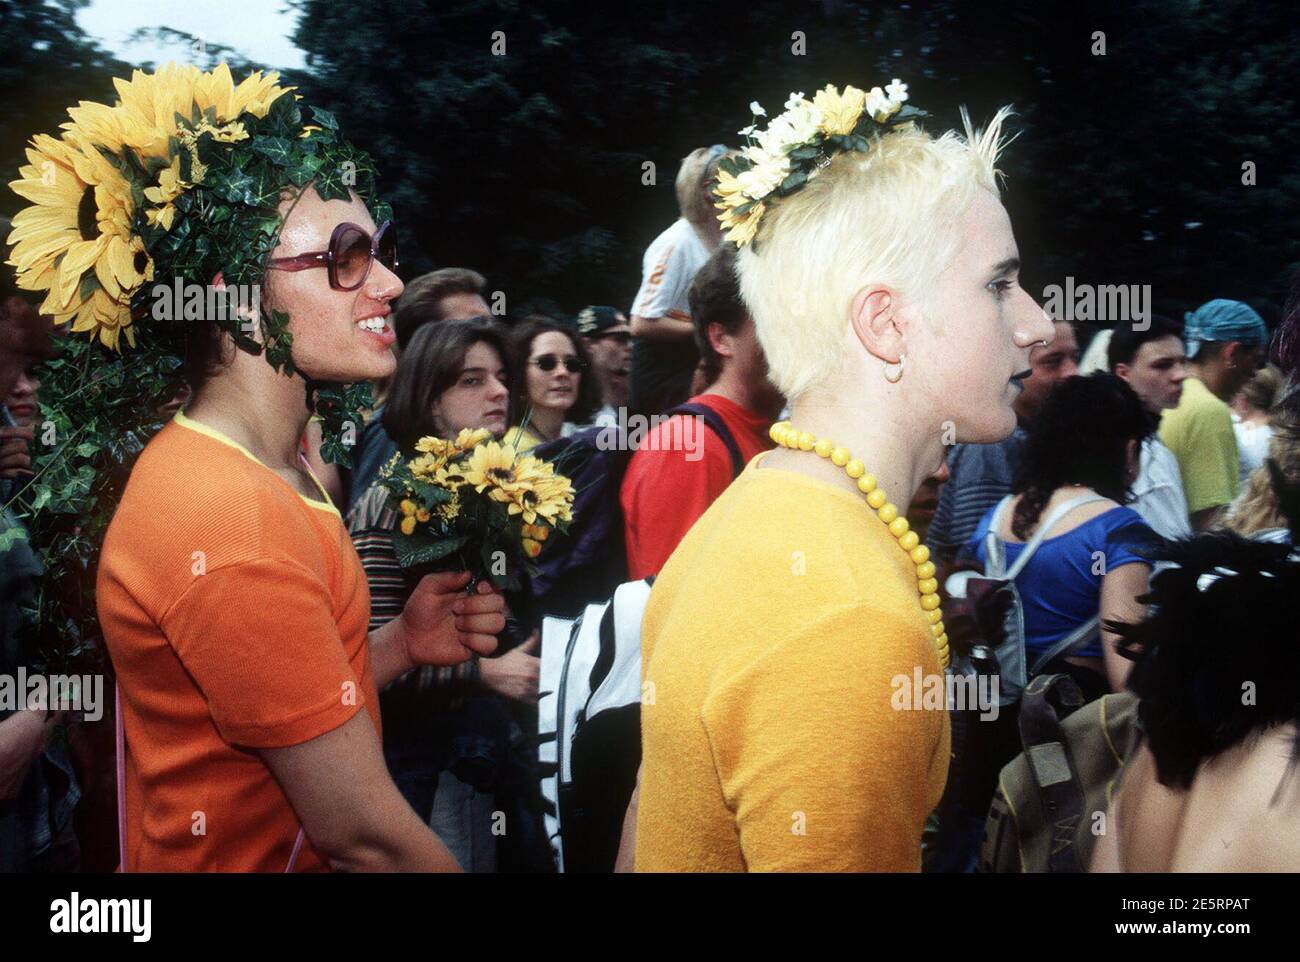 Junge Leute bei der Love Parade in Berlin, 1999. Junge Menschen bei der Love Parade in Berlin, 1999. Stockfoto